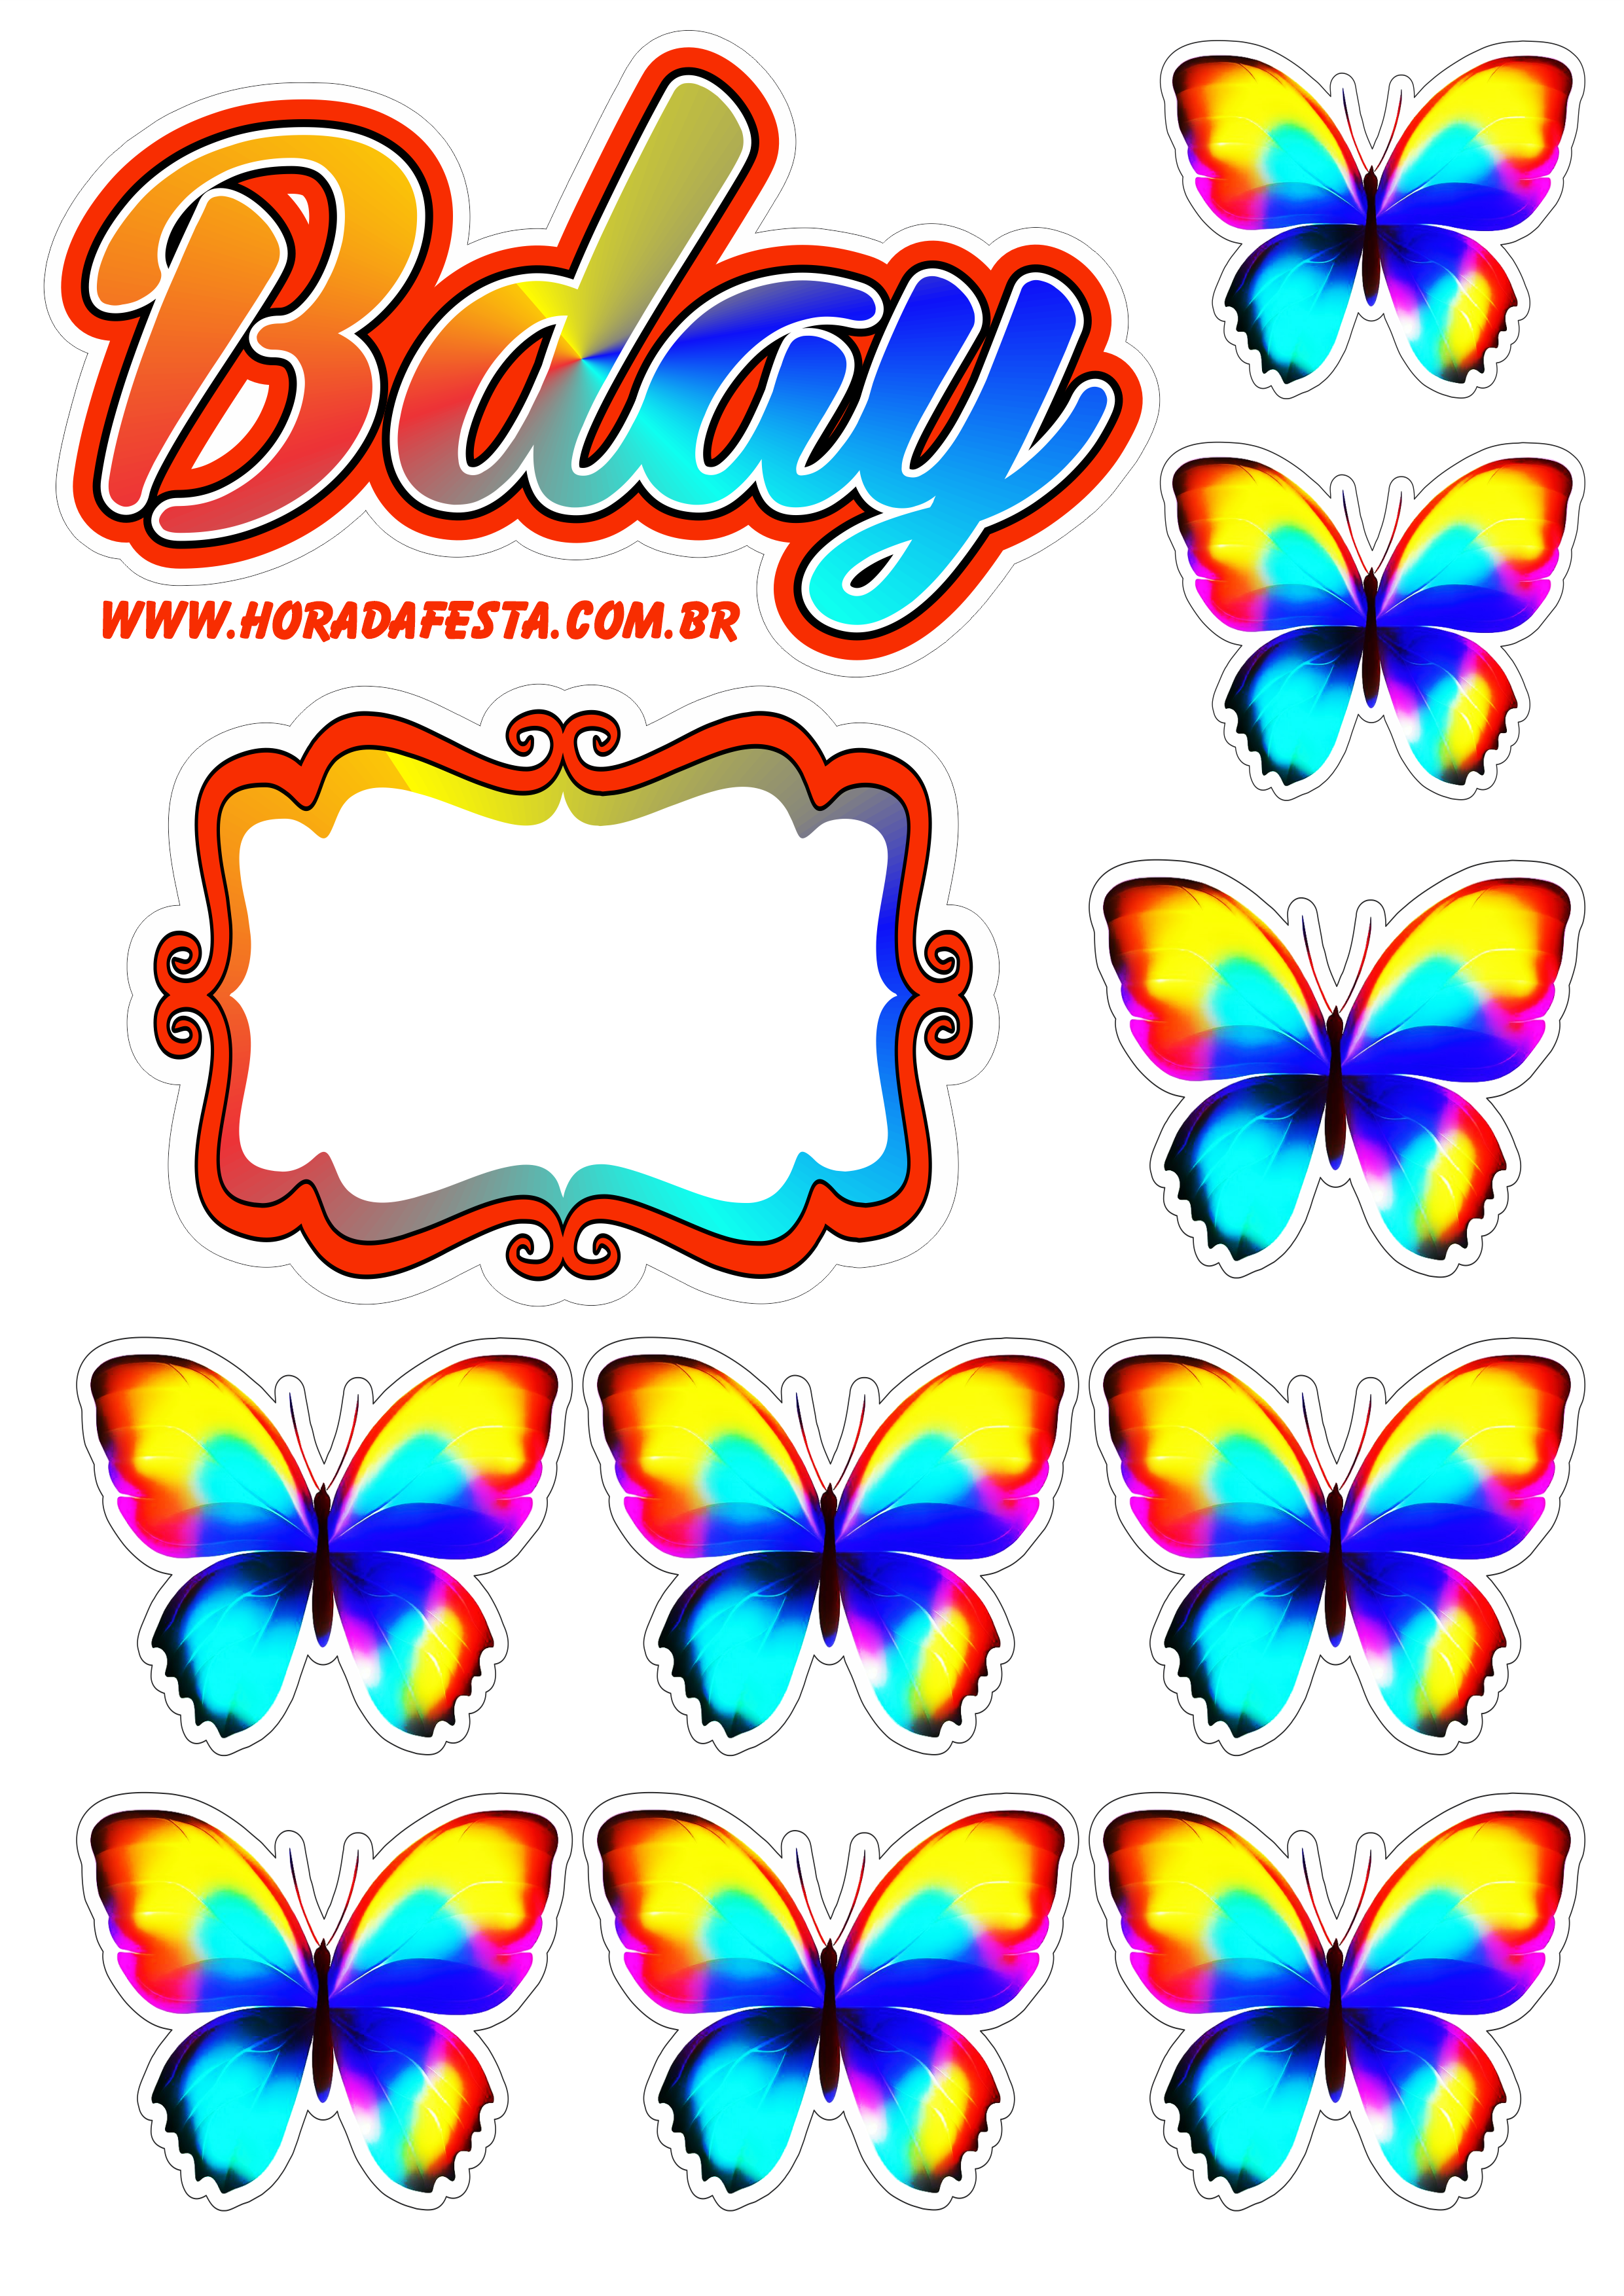 Happy birthday Bday topo de bolo para imprimir borboletas coloridas fazendo a nossa festa design artigos de papelaria png